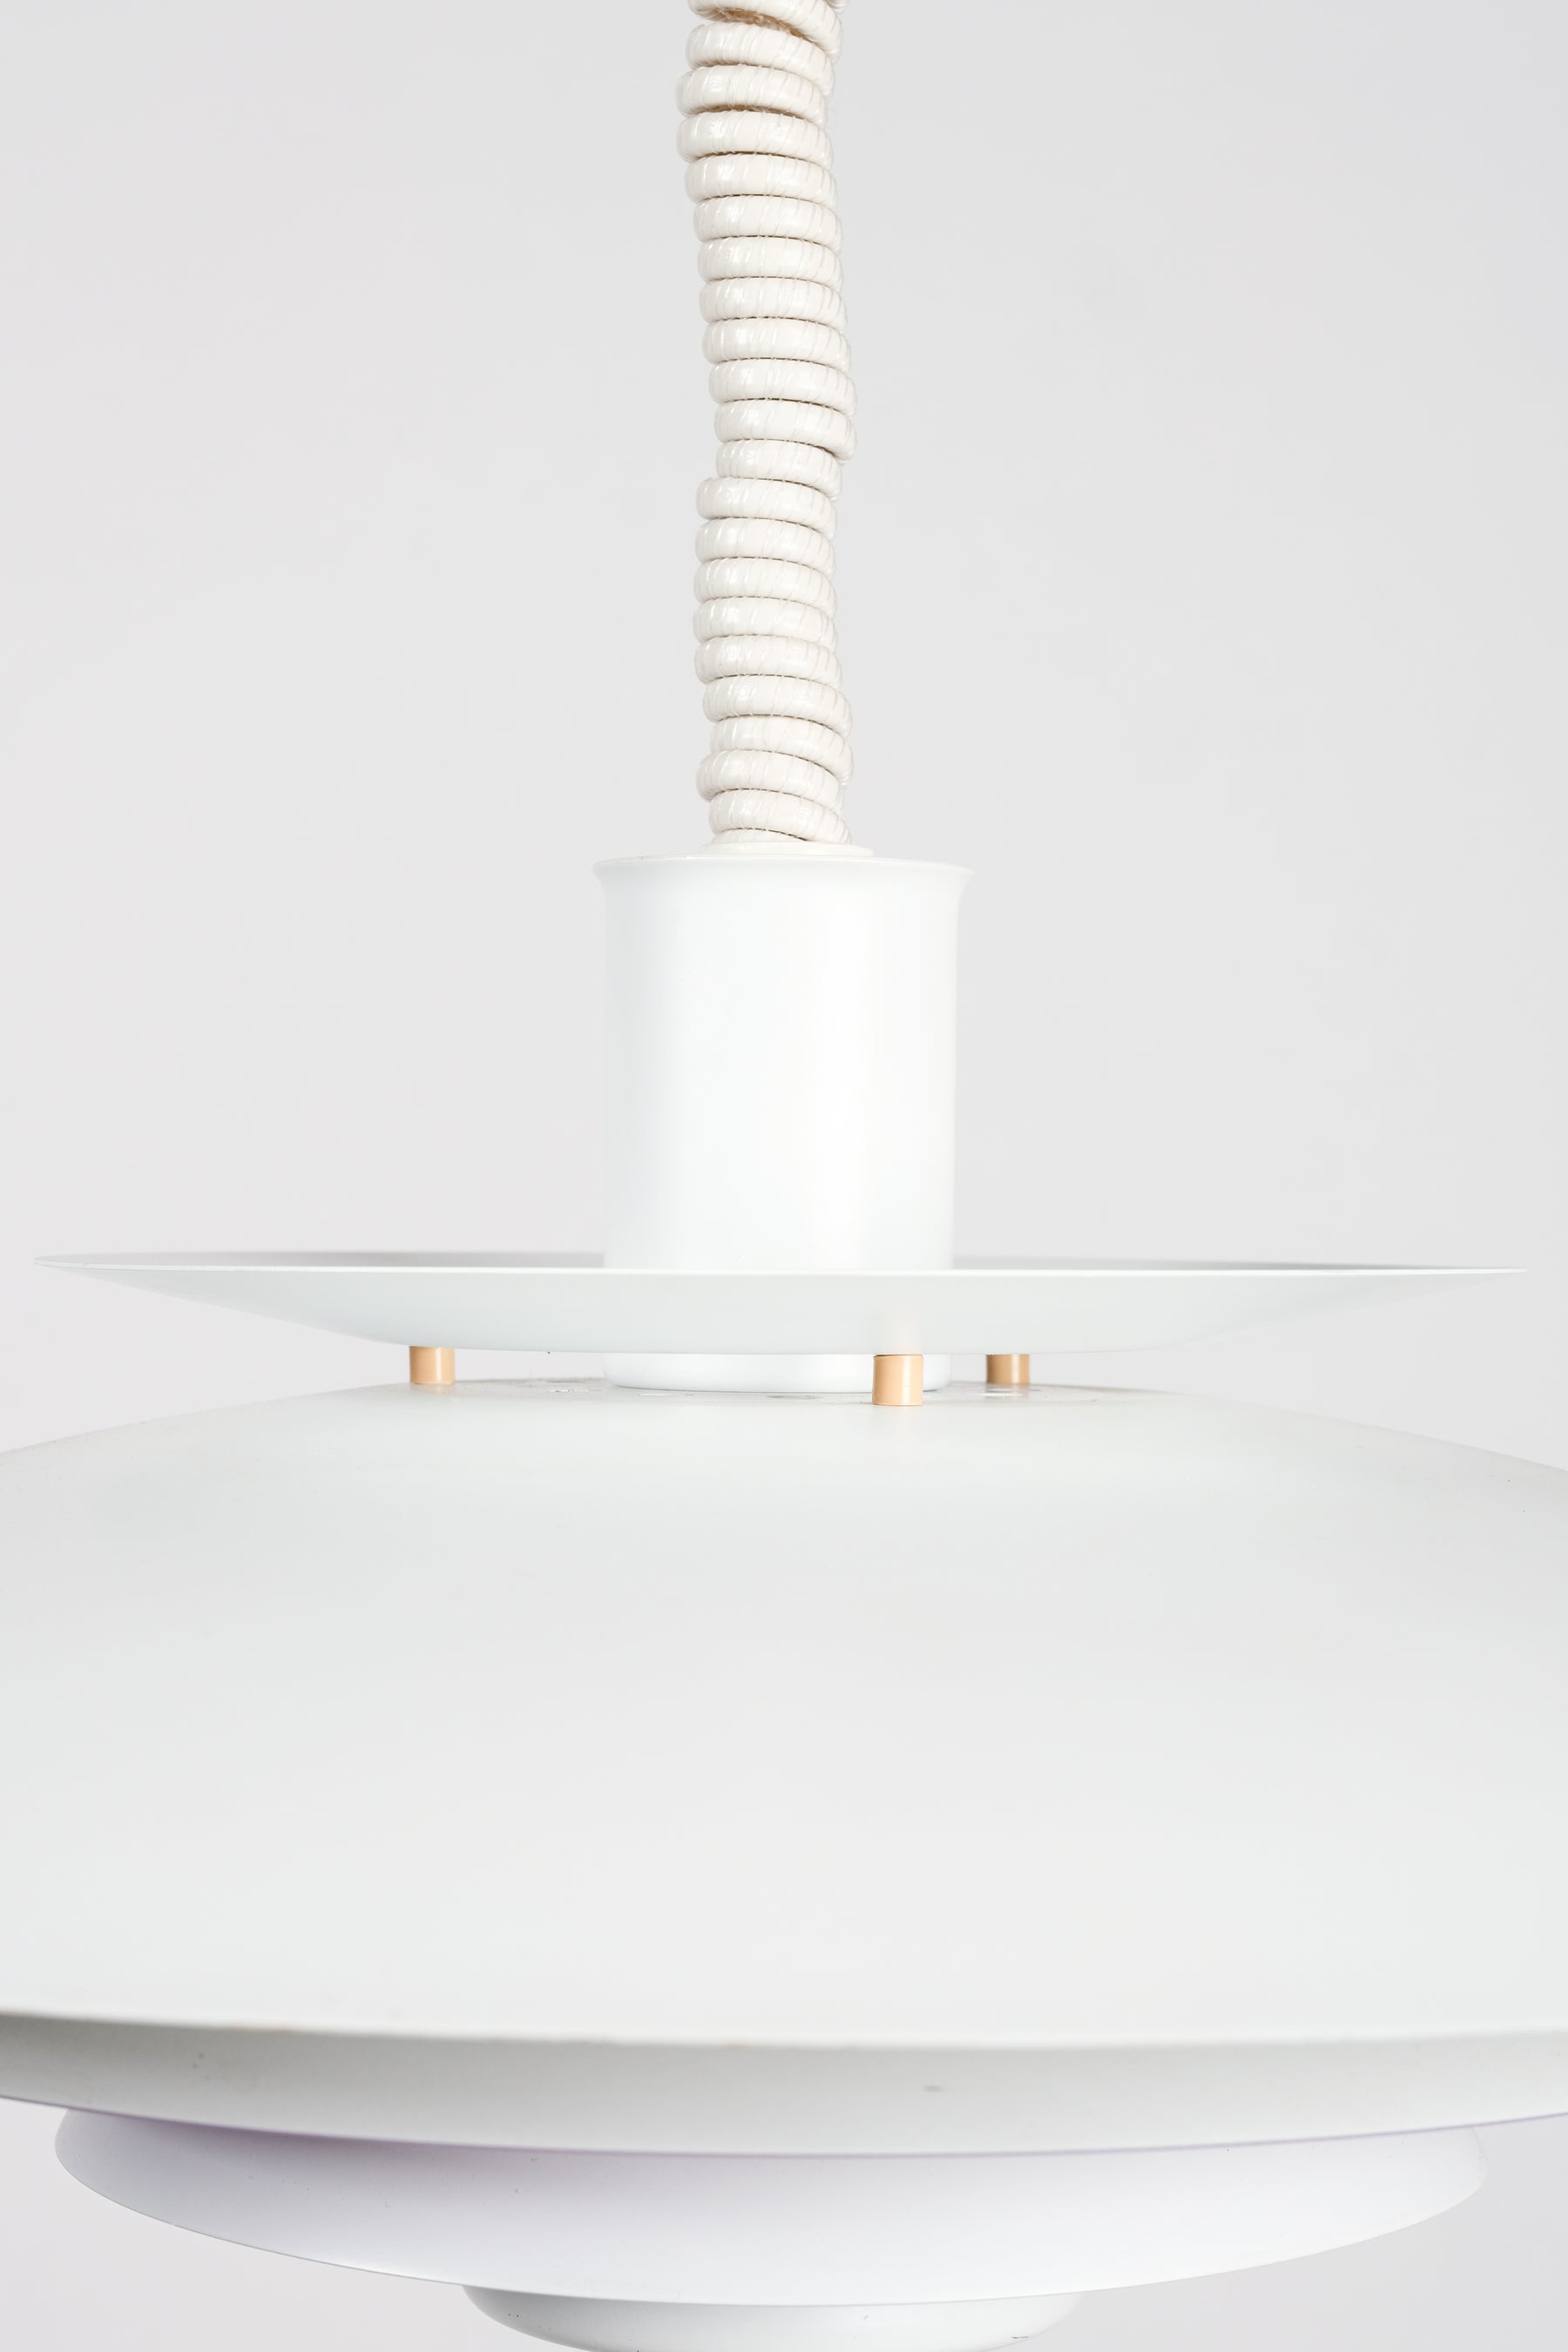 Deckenlampe, Modell n52503, Form Light, Dänemark, 80er